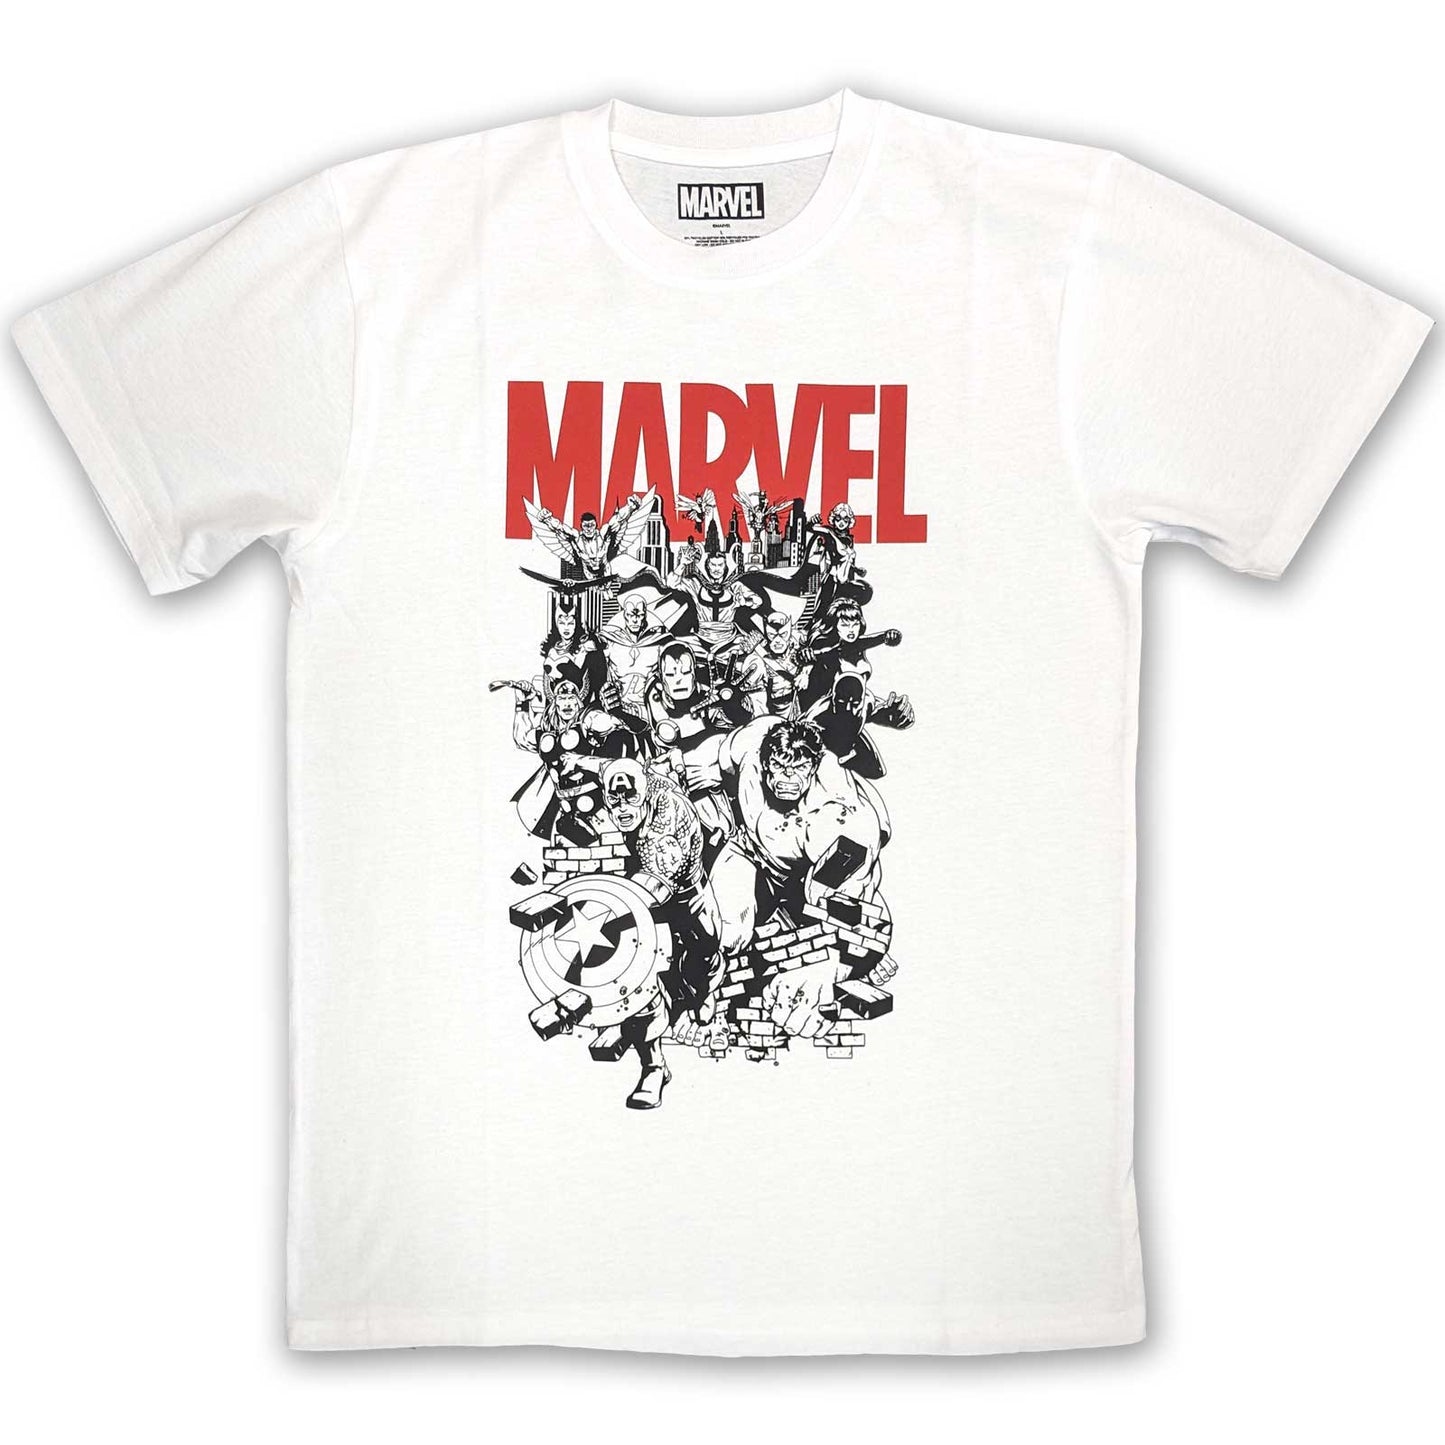 Marvel Comics T-Shirt: Black & White Characters